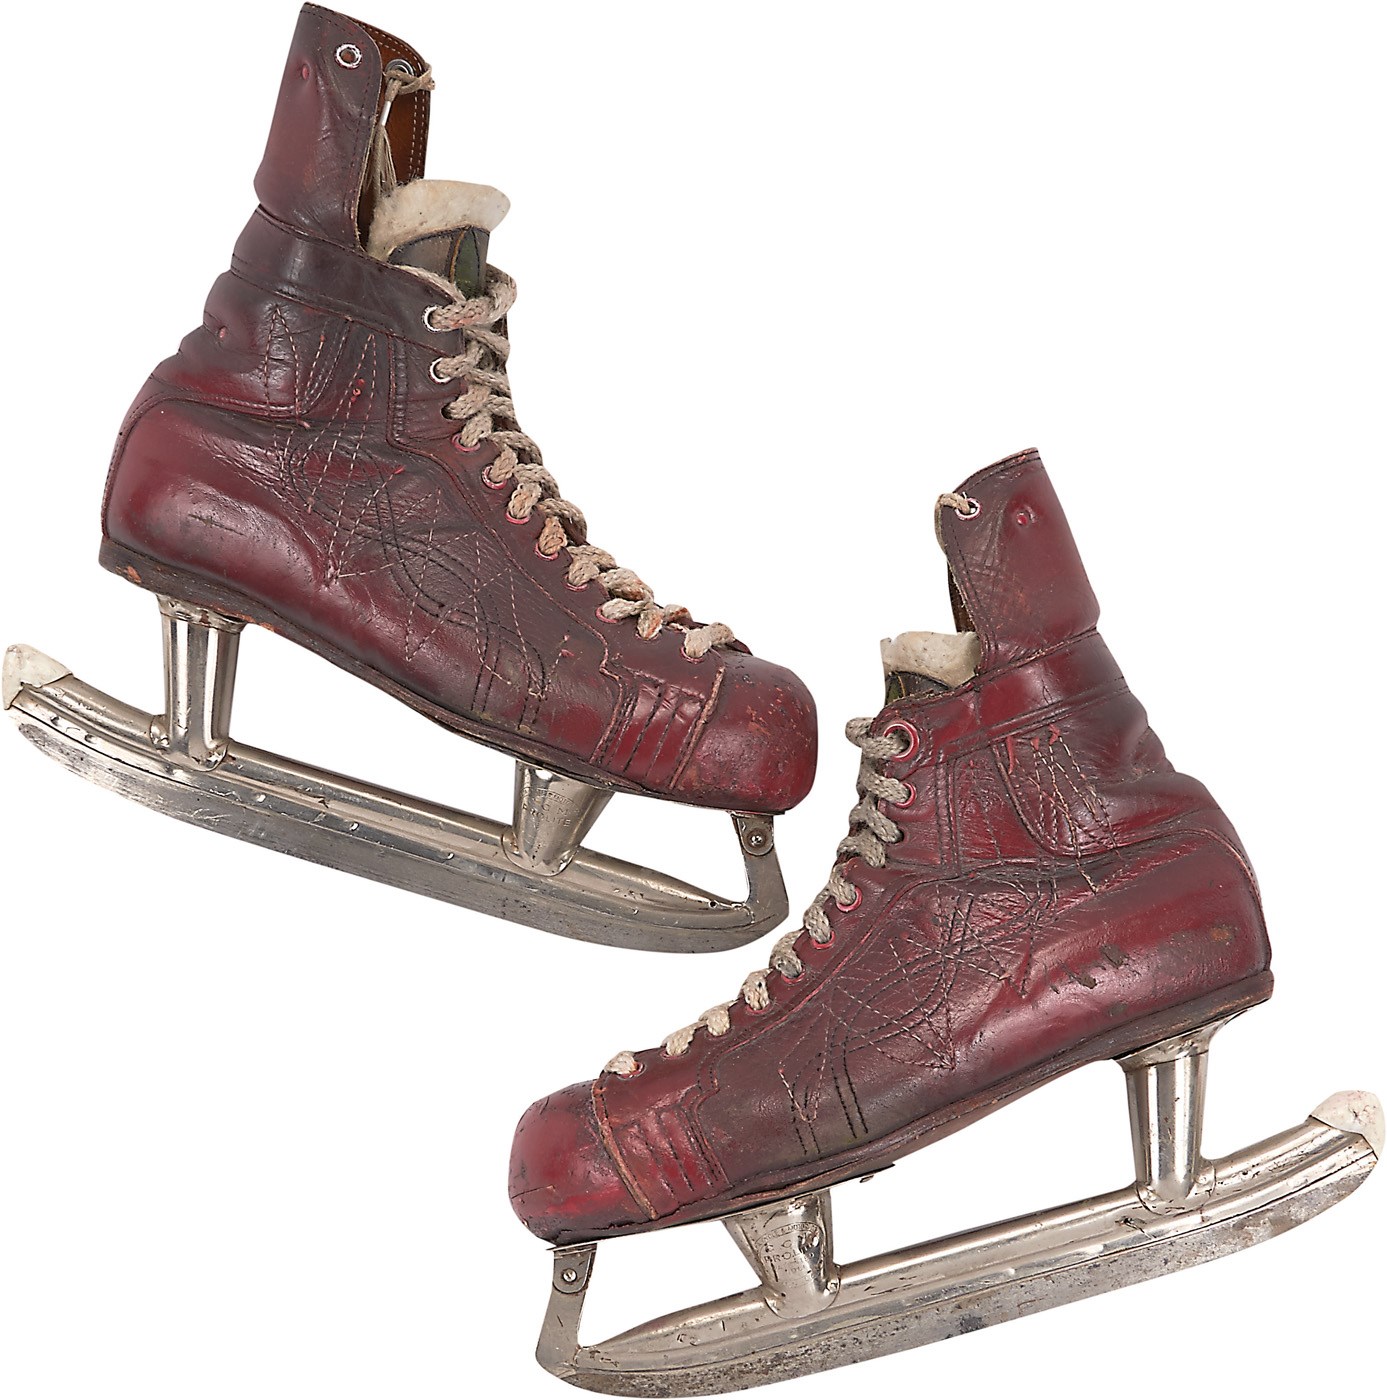 - Historic 1965 Gordie Howe Game Worn Skates From Hockey Pioneer Lefty Wilson